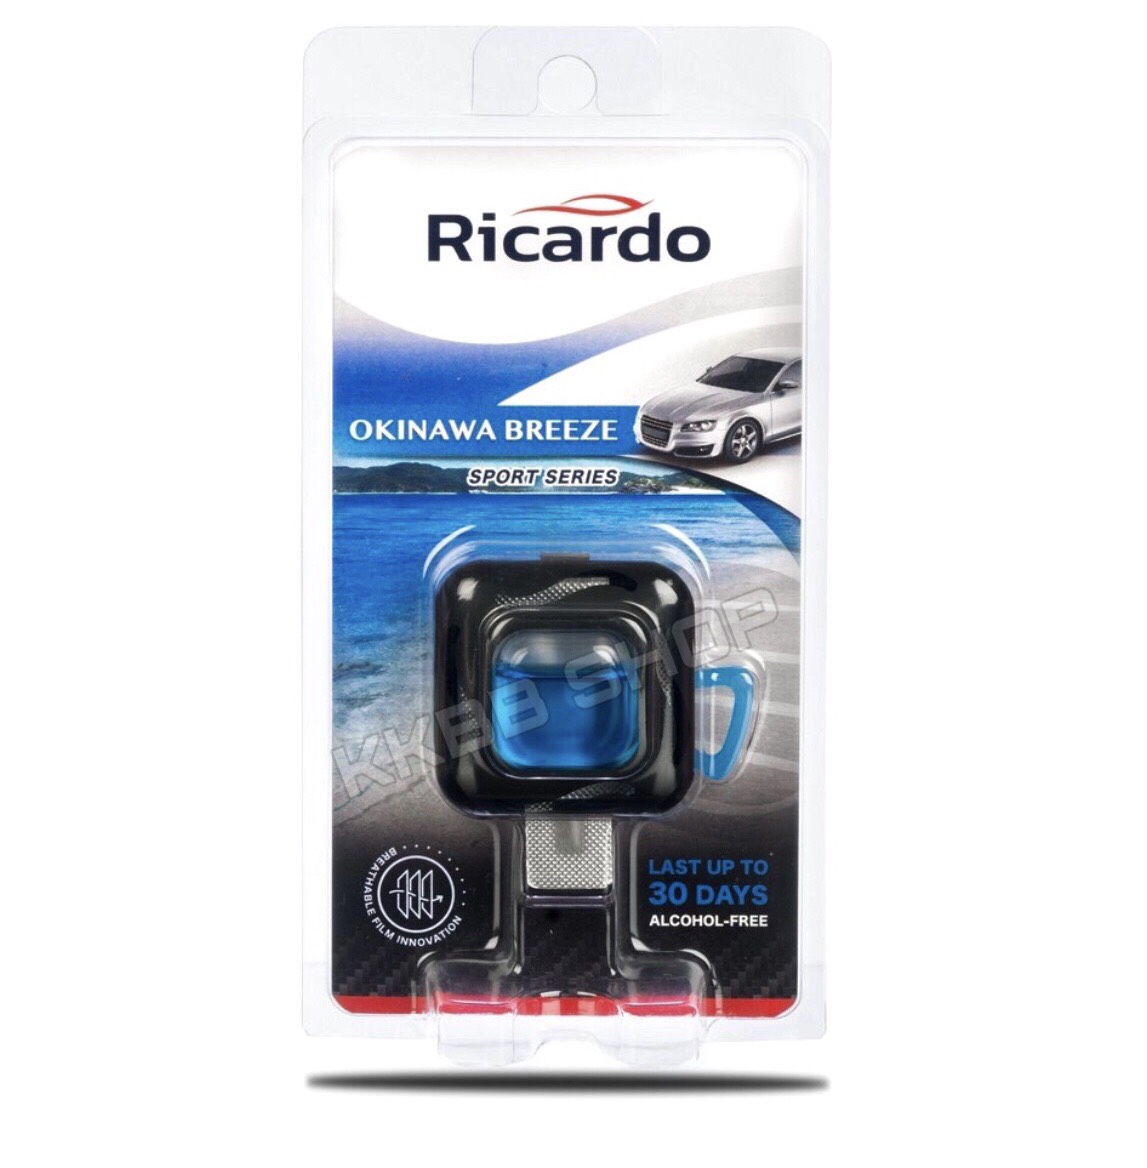 น้ำหอมรถยนต์ปรับอากาศรถยนต์ Ricardo สีฟ้า